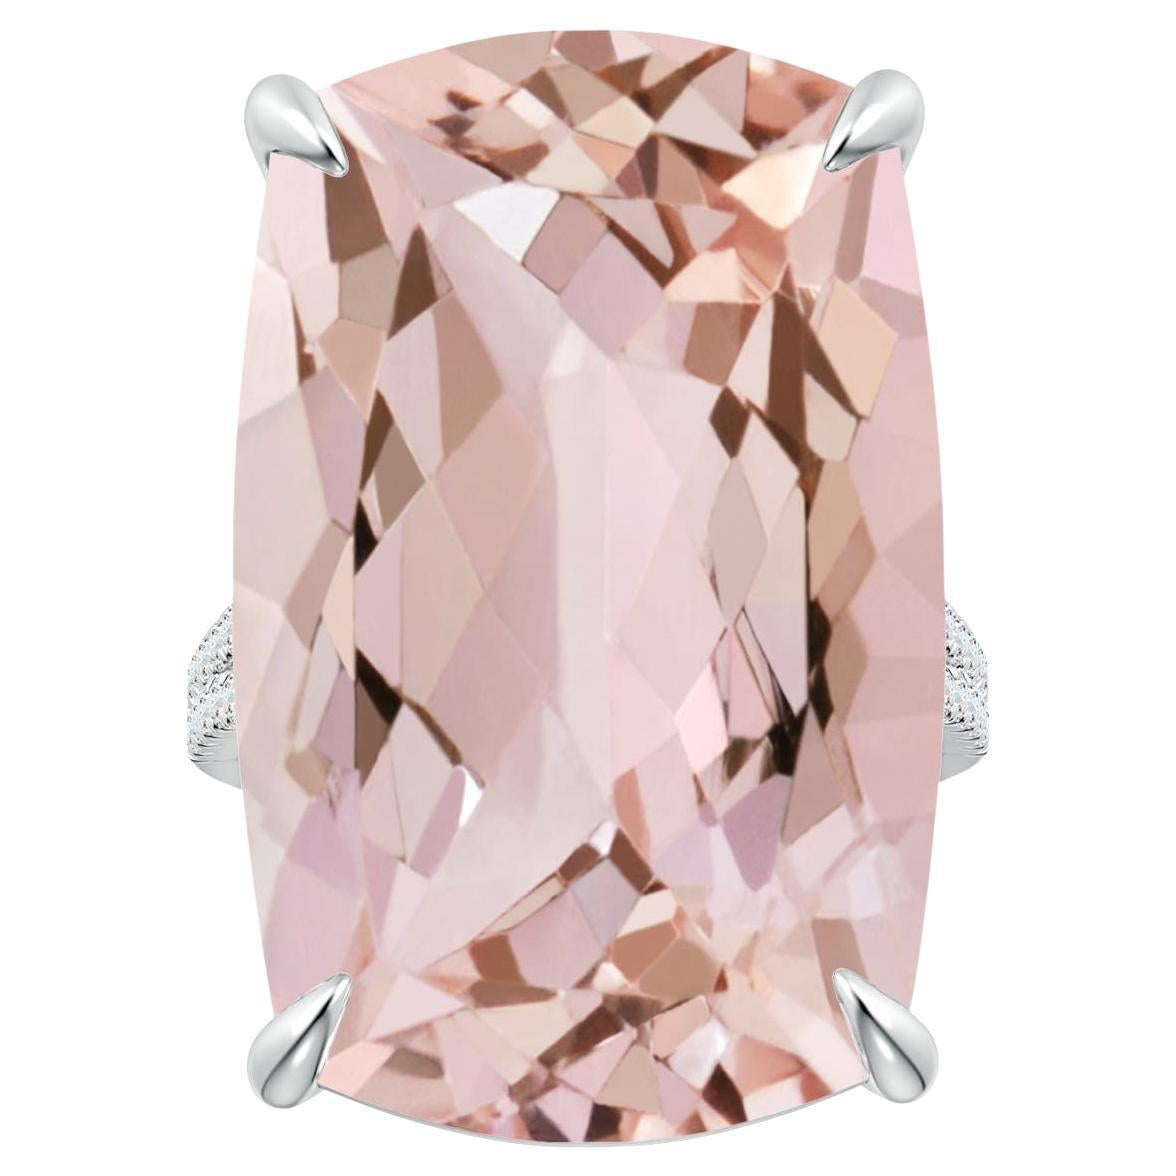 En vente :  Angara Bague en platine avec diamants et morganite taille coussin certifiée GIA